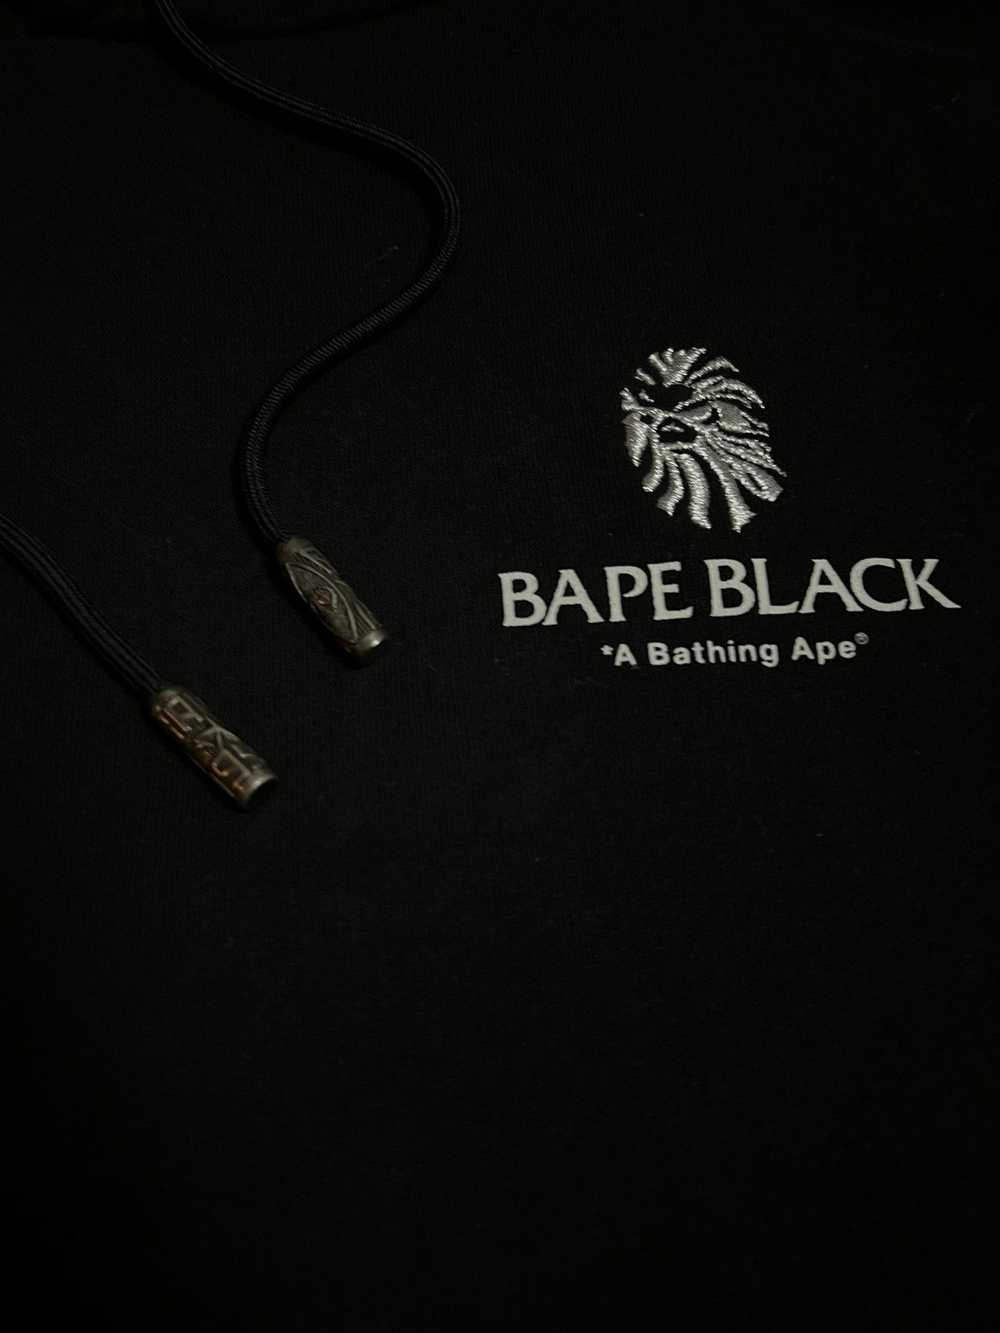 Bape BAPE Black by A Bathing Ape Swarovski Pullov… - image 3